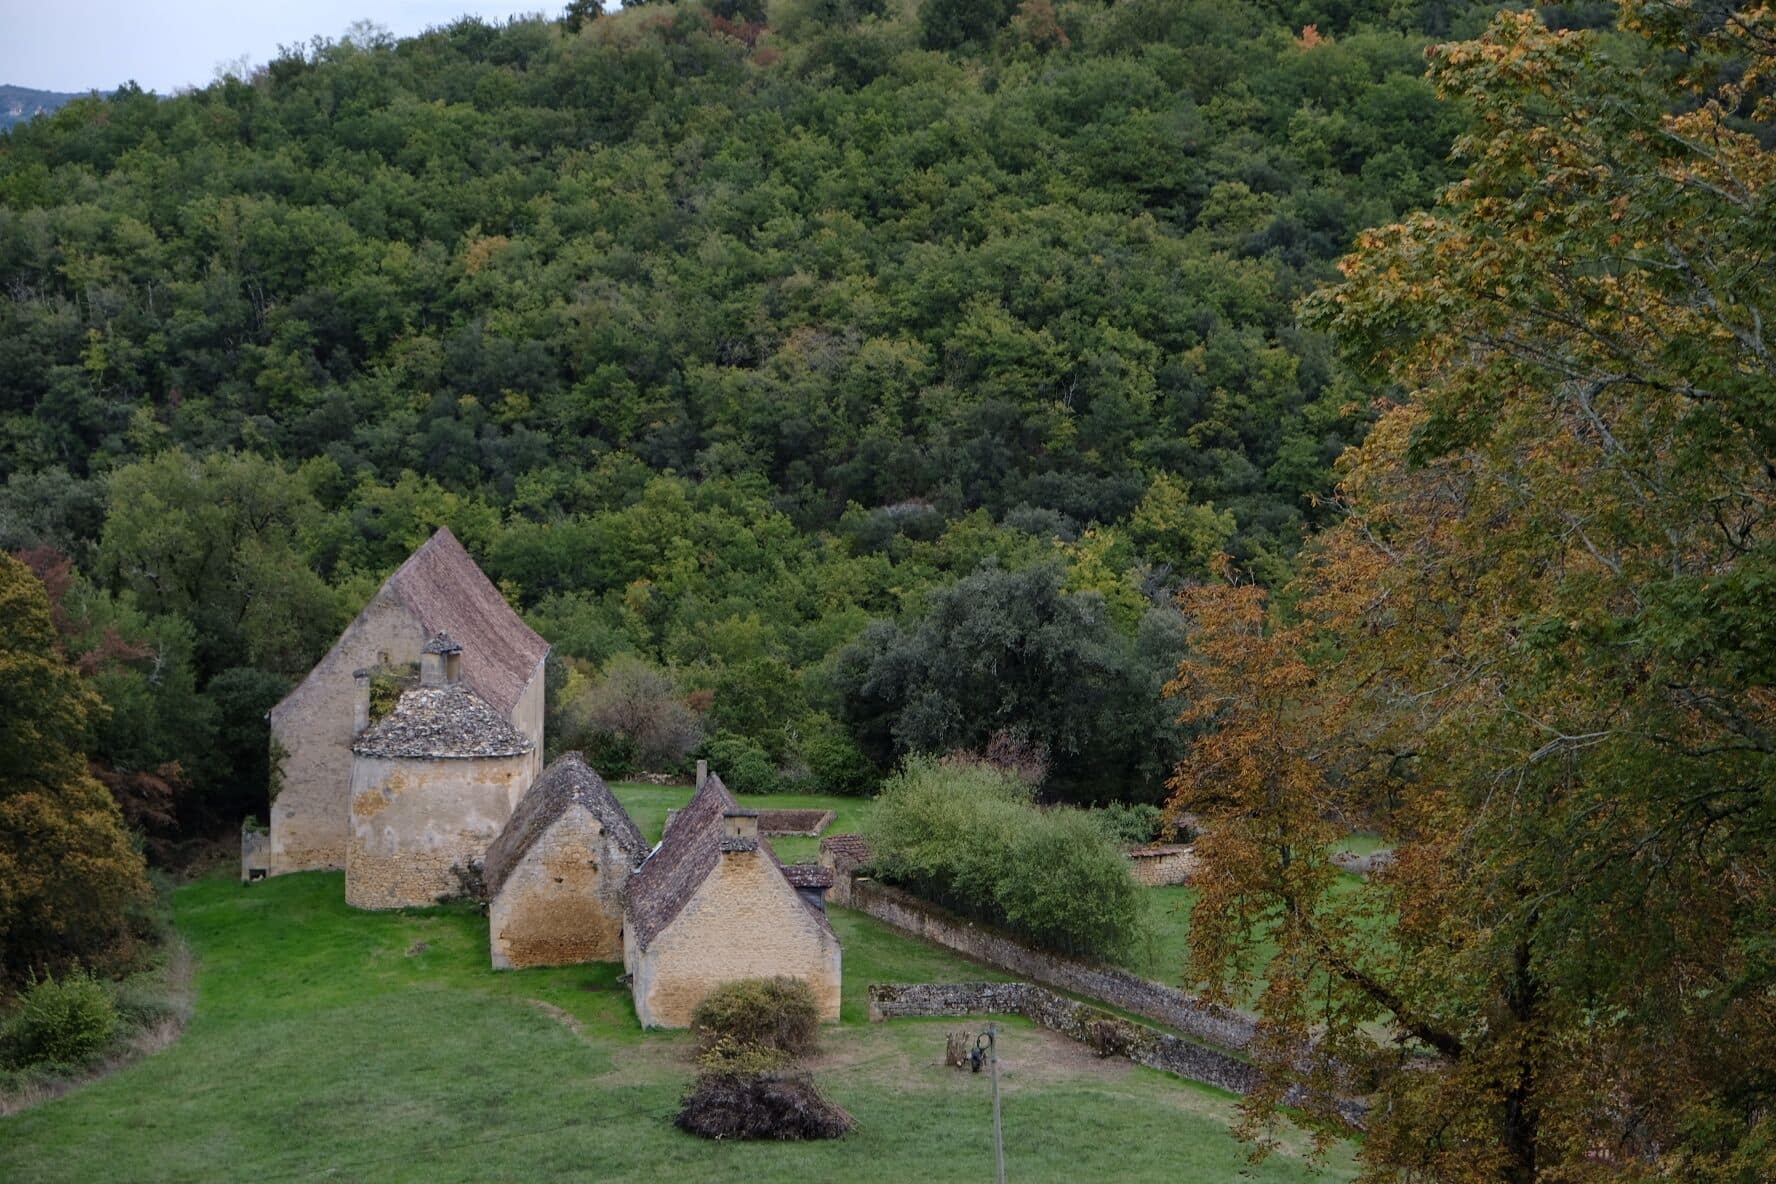 View of the Fénelon castle